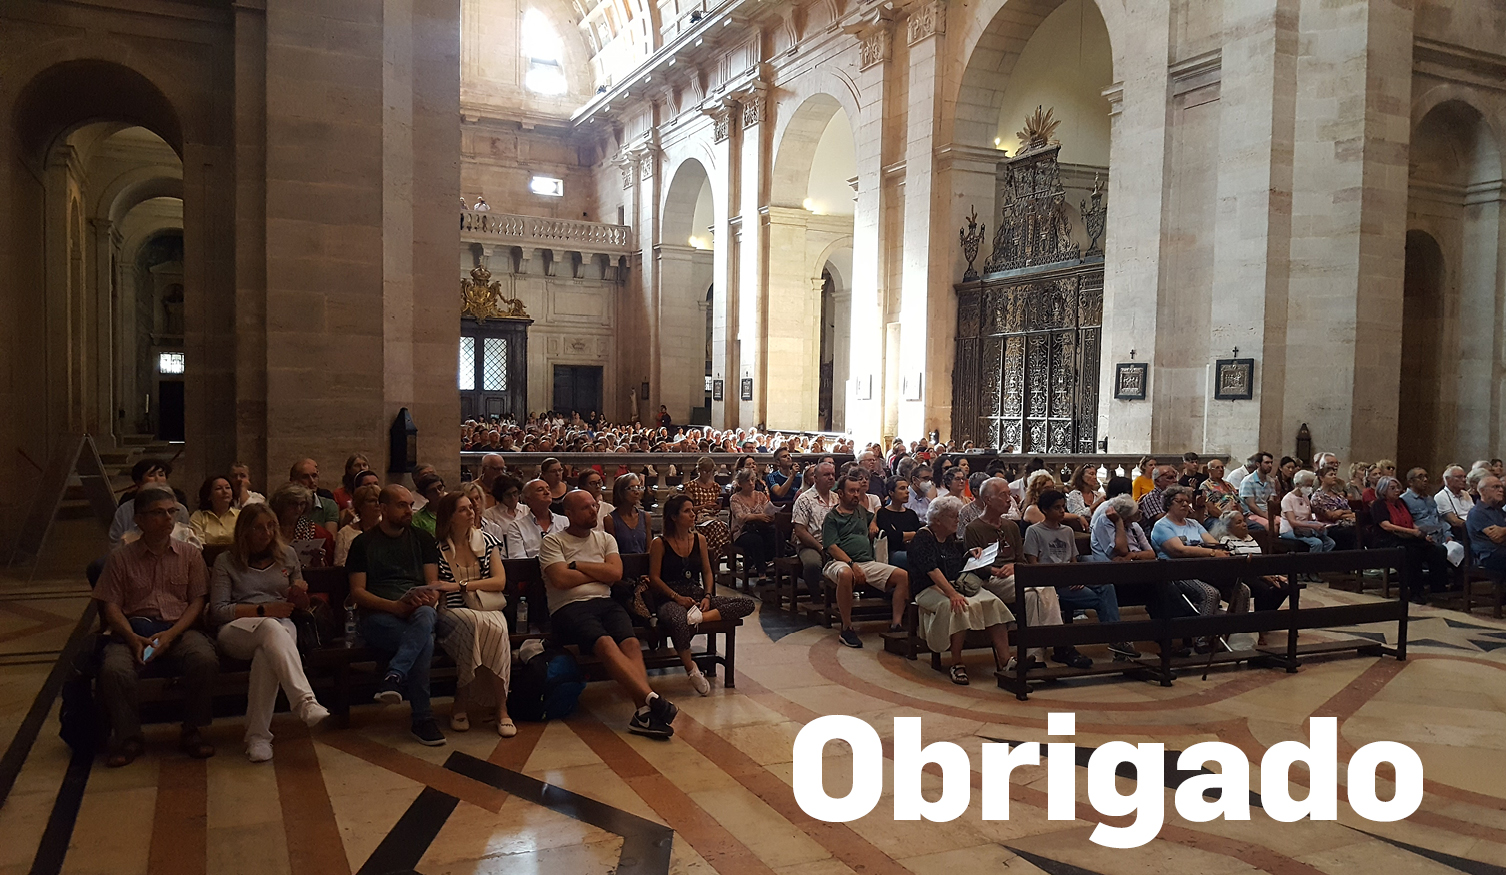 XIII Ciclo de Concertos de órgão - Igreja de São Vicente de Fora - 2023